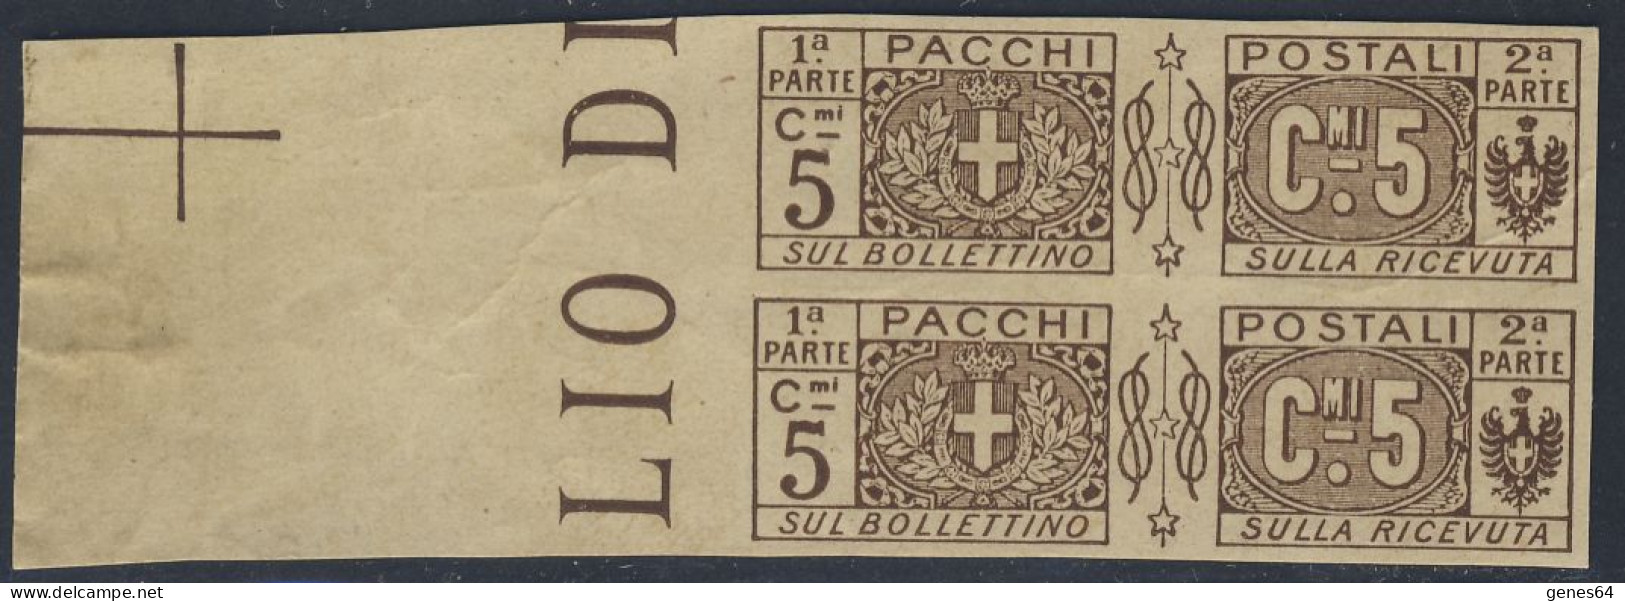 1914/22 - Prova Di Stampa Su Carta Sottile 5 C. Bruno Coppia Bordo Di Foglio - Non Comune - 2 Foto (vedi Descrizione) - Pacchi Postali